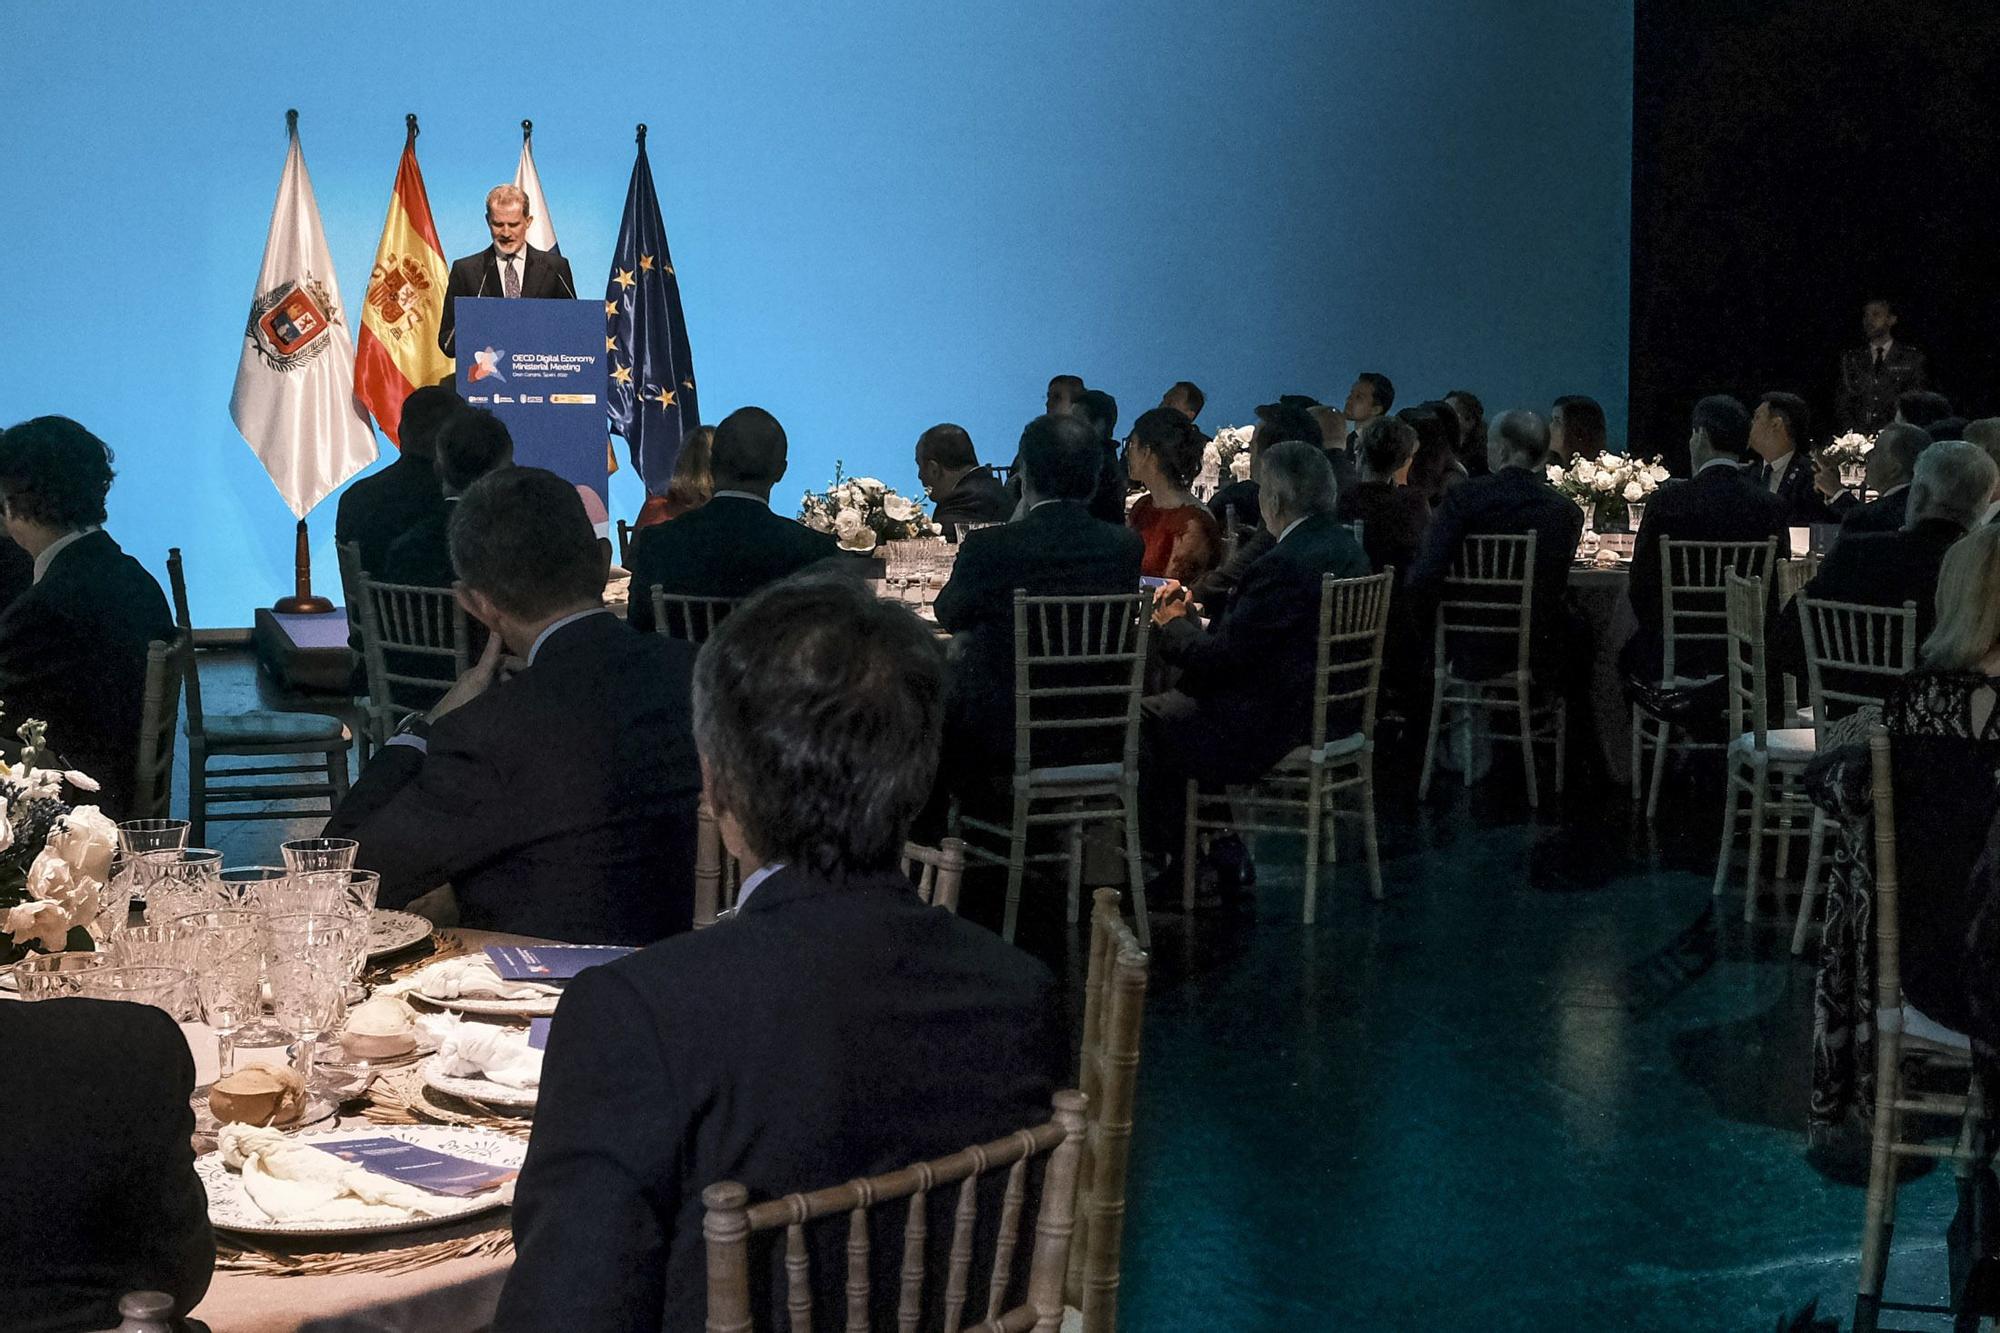 Felipe VI inaugura la Conferencia Ministerial sobre Economía Digital de la OCDE